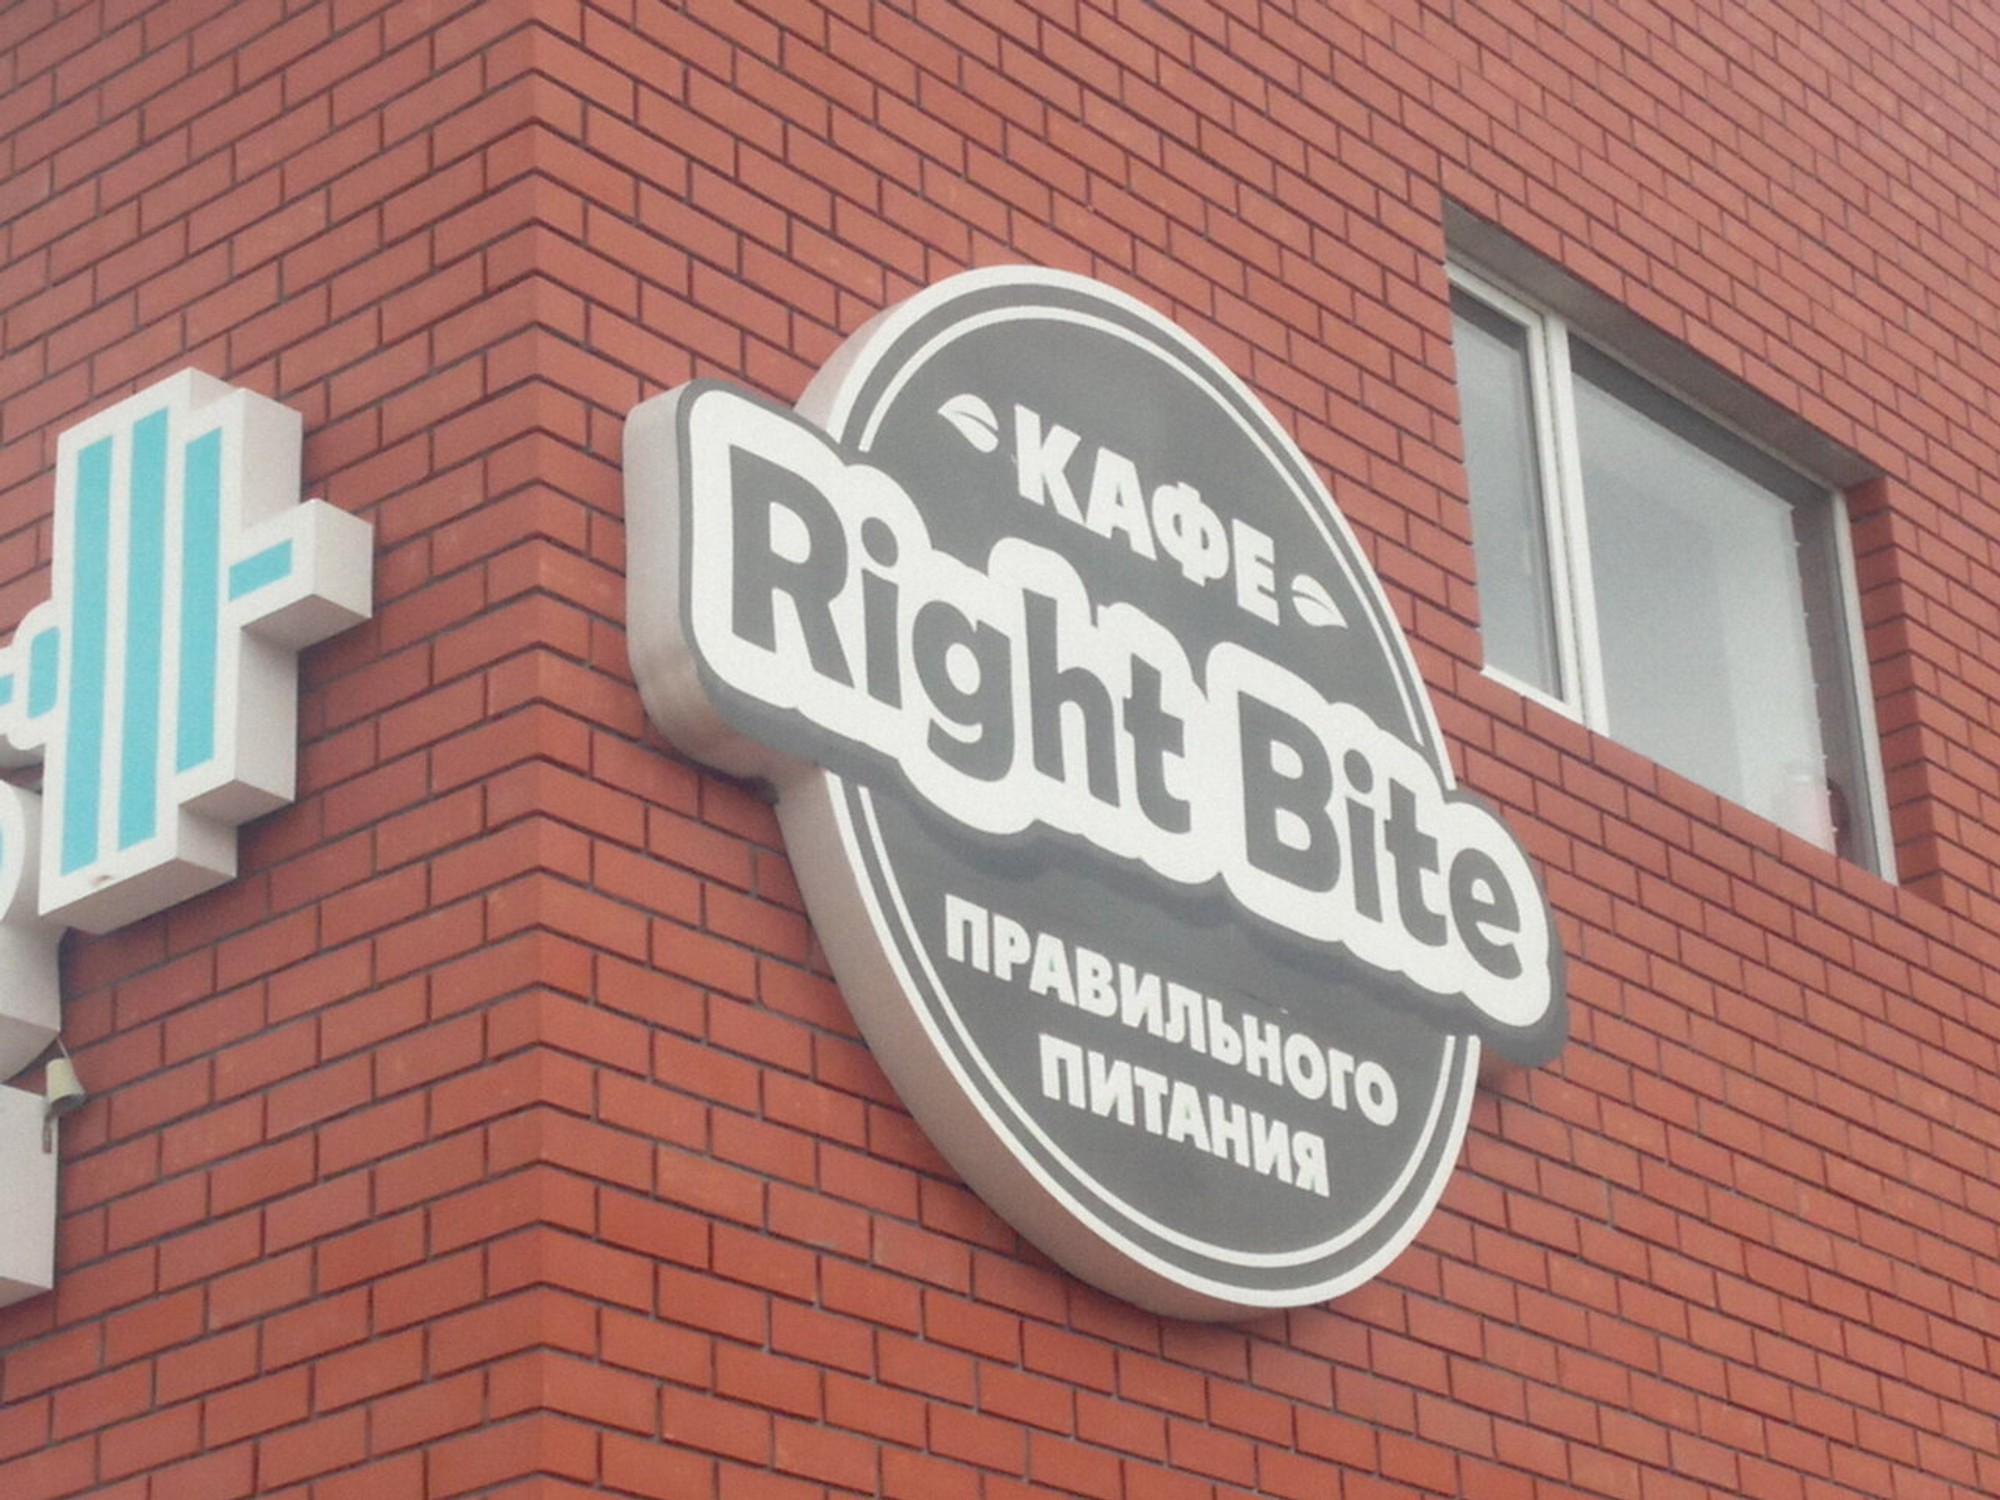 Right Bite (Кафе)